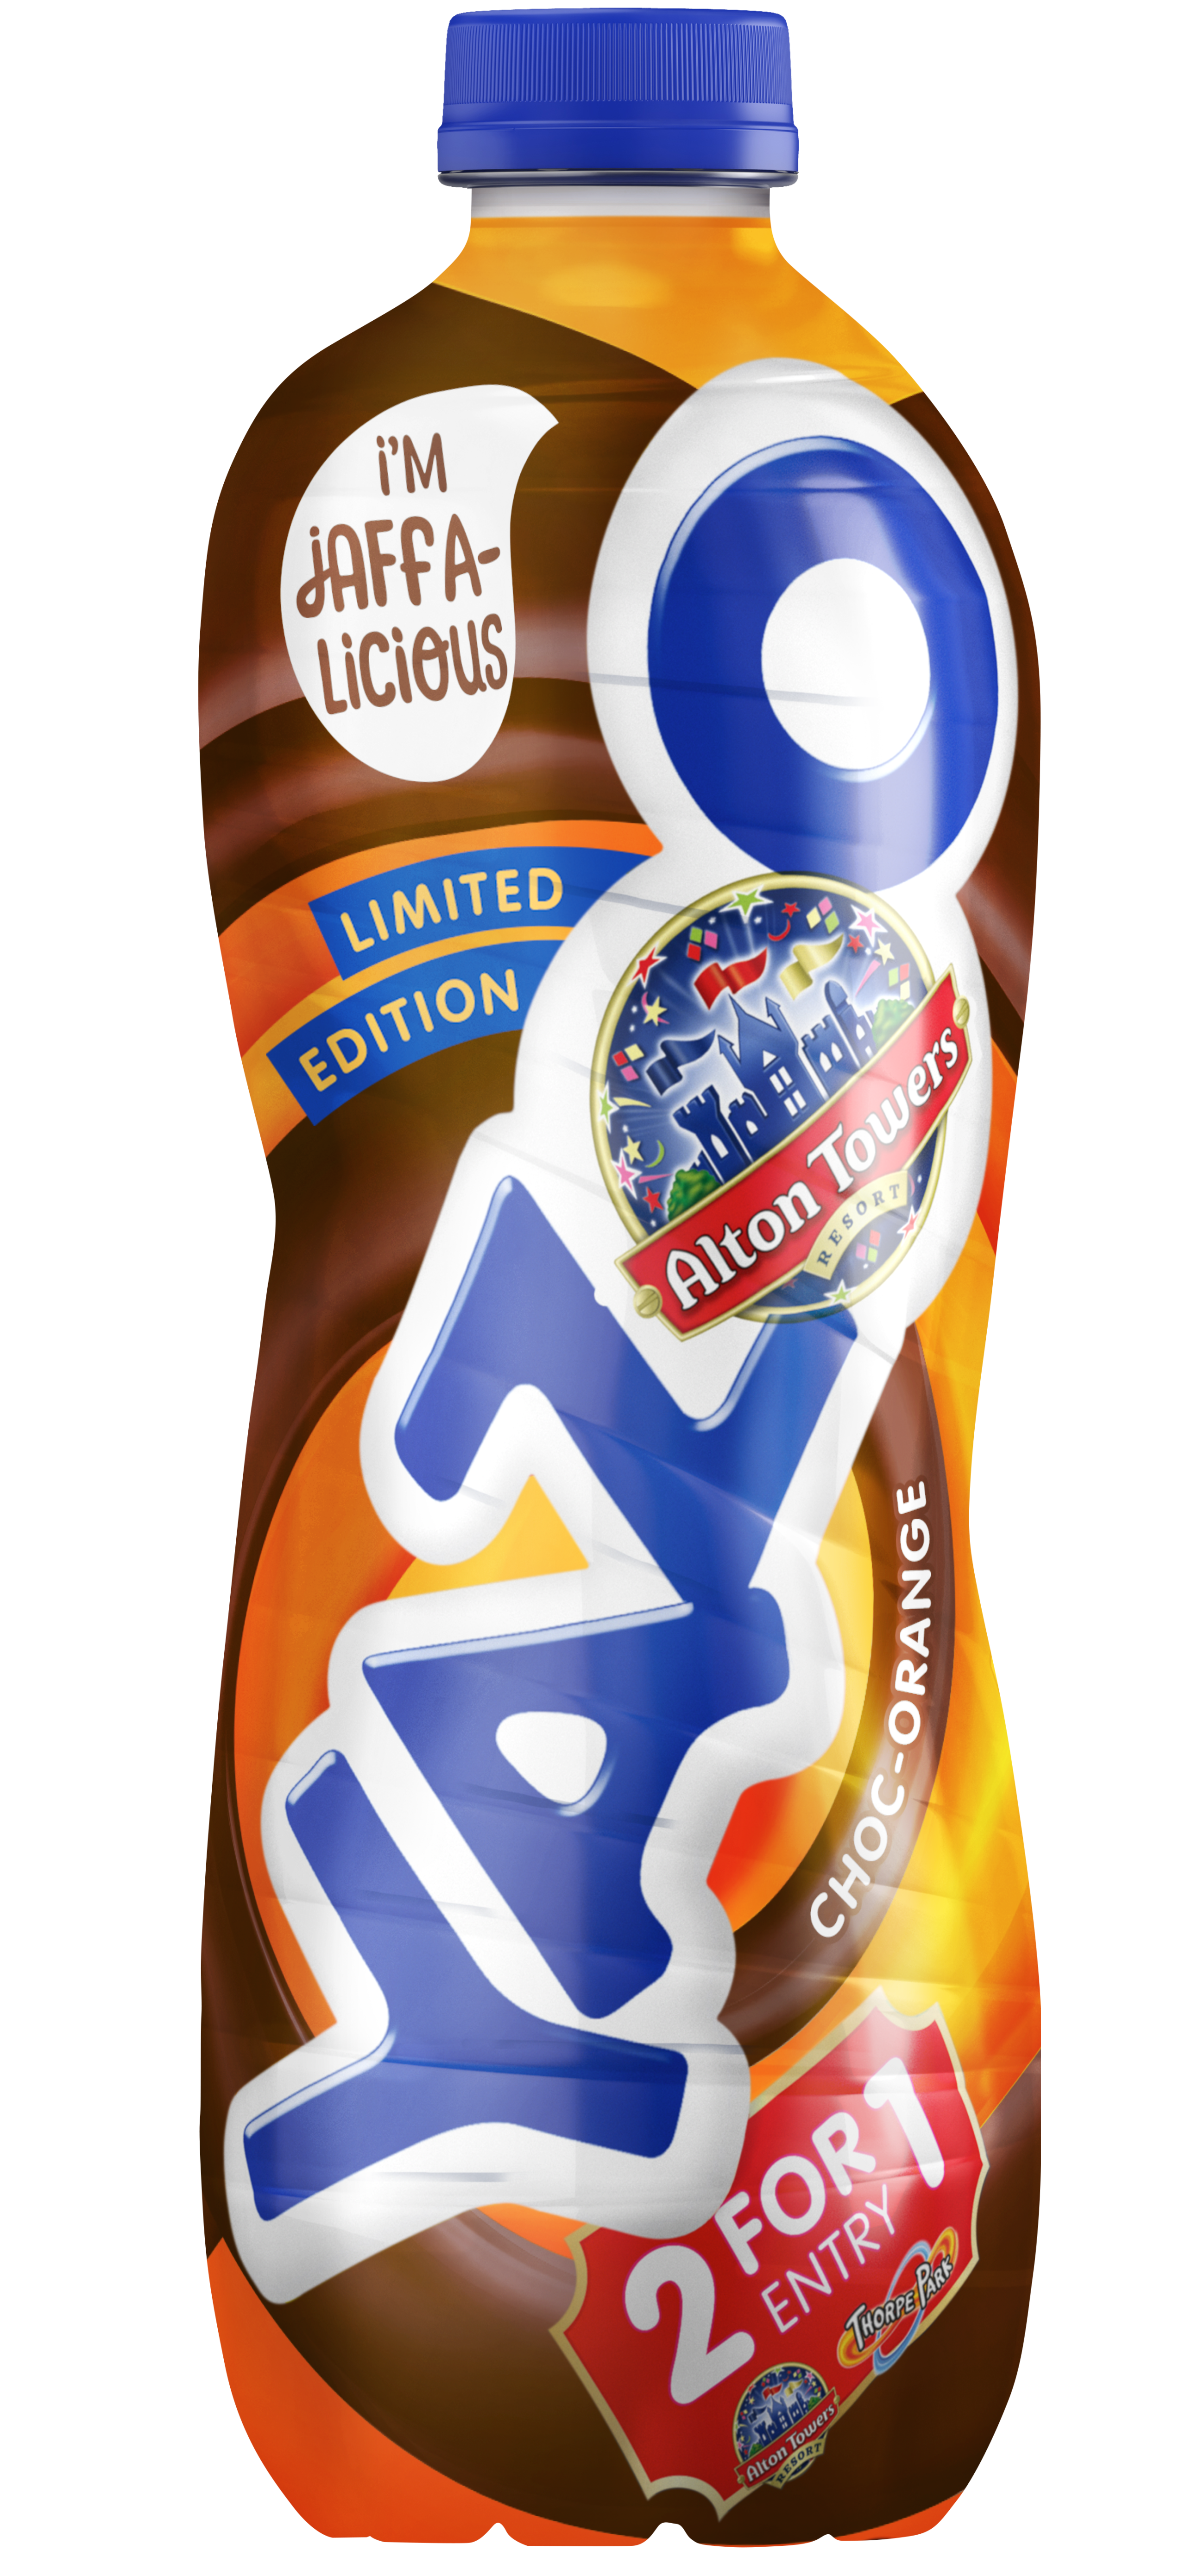 YAZOO launches one litre Jaffalicious Choc-Orange